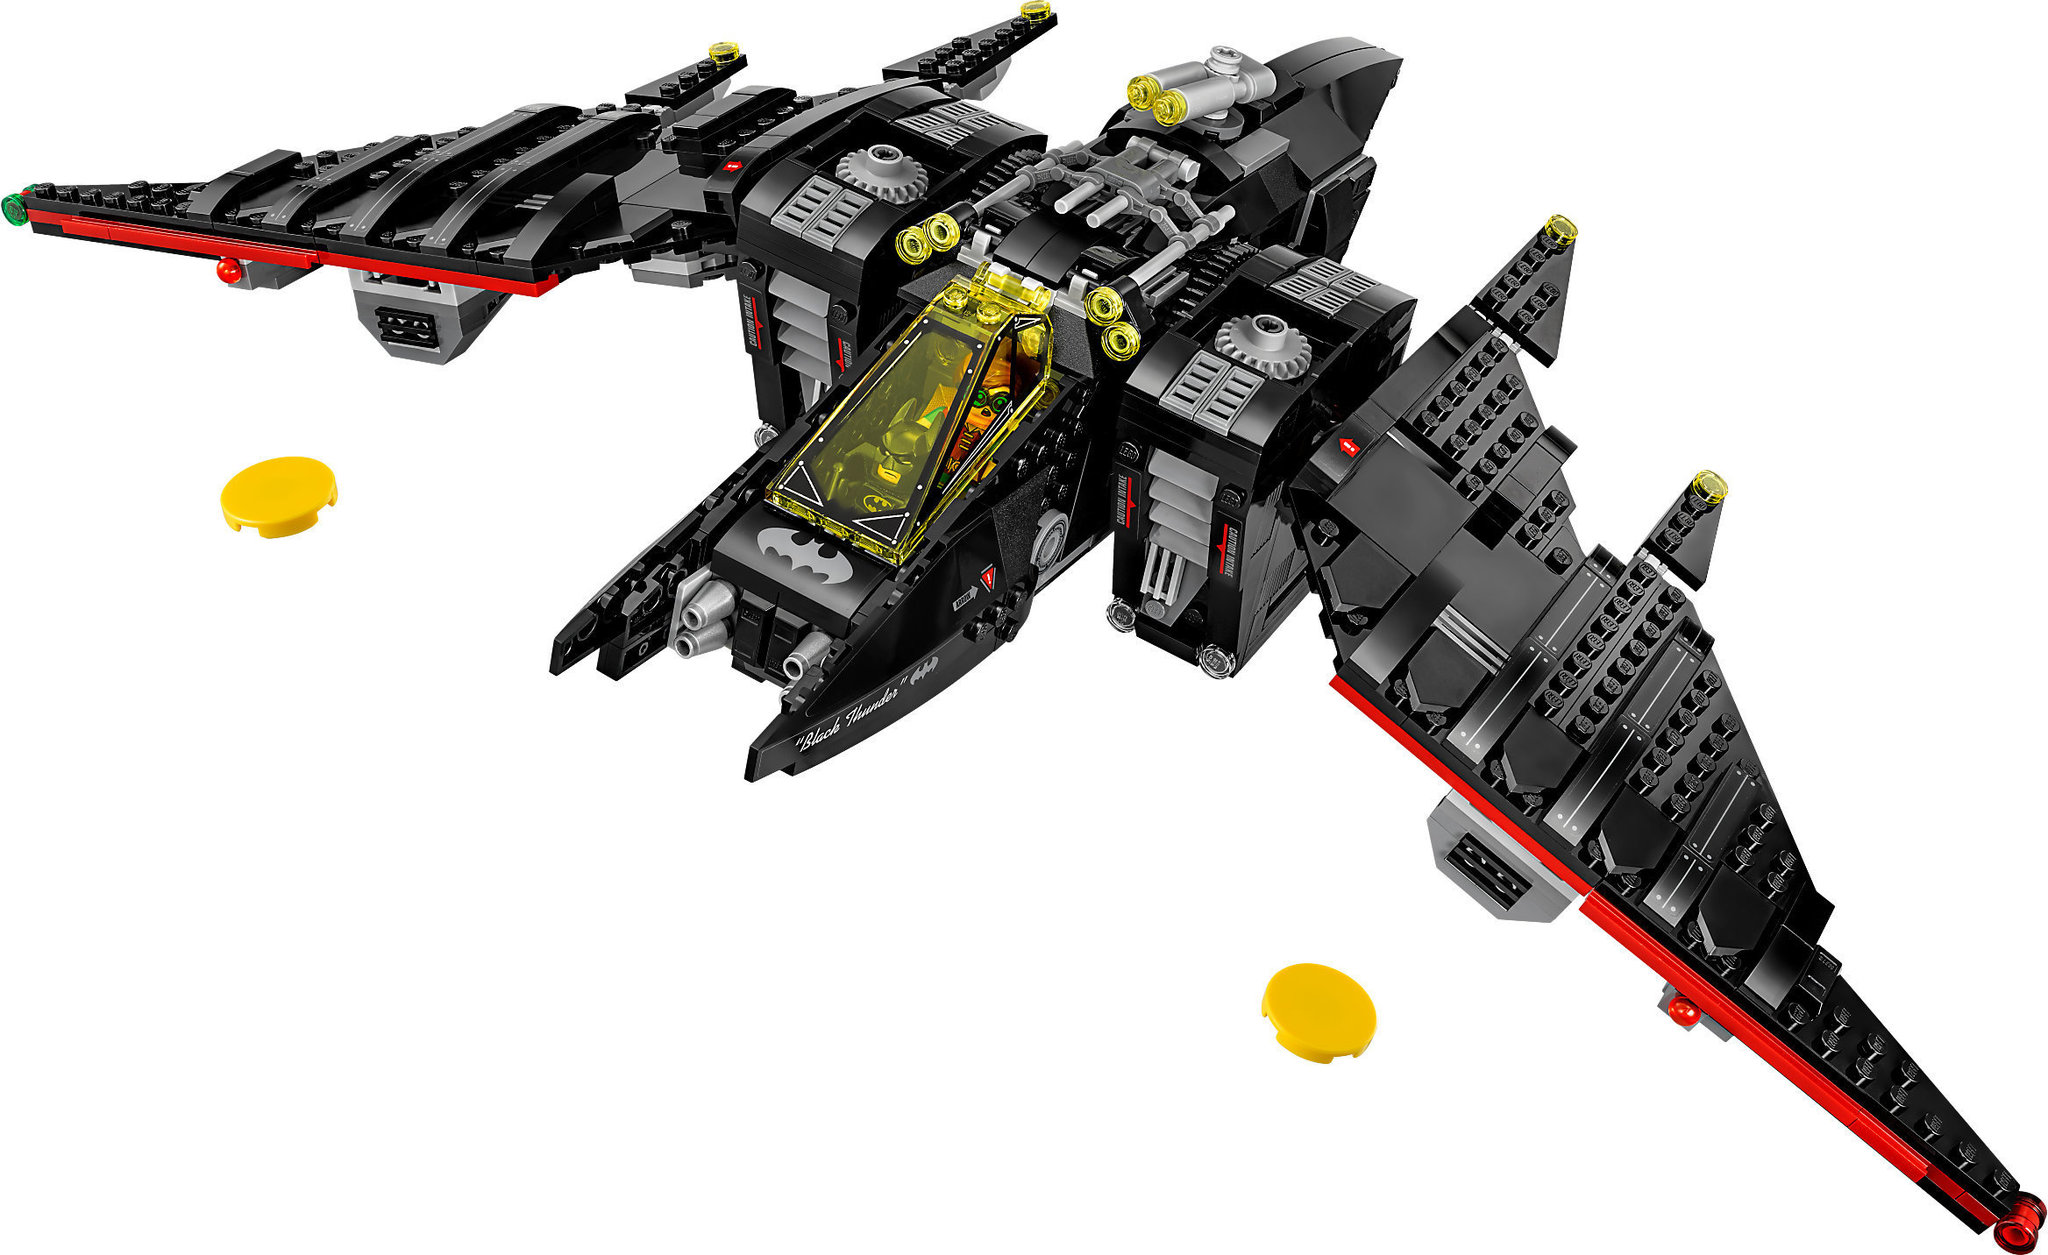 LEGO Batman Movie 70916 The Batwing Mattonito